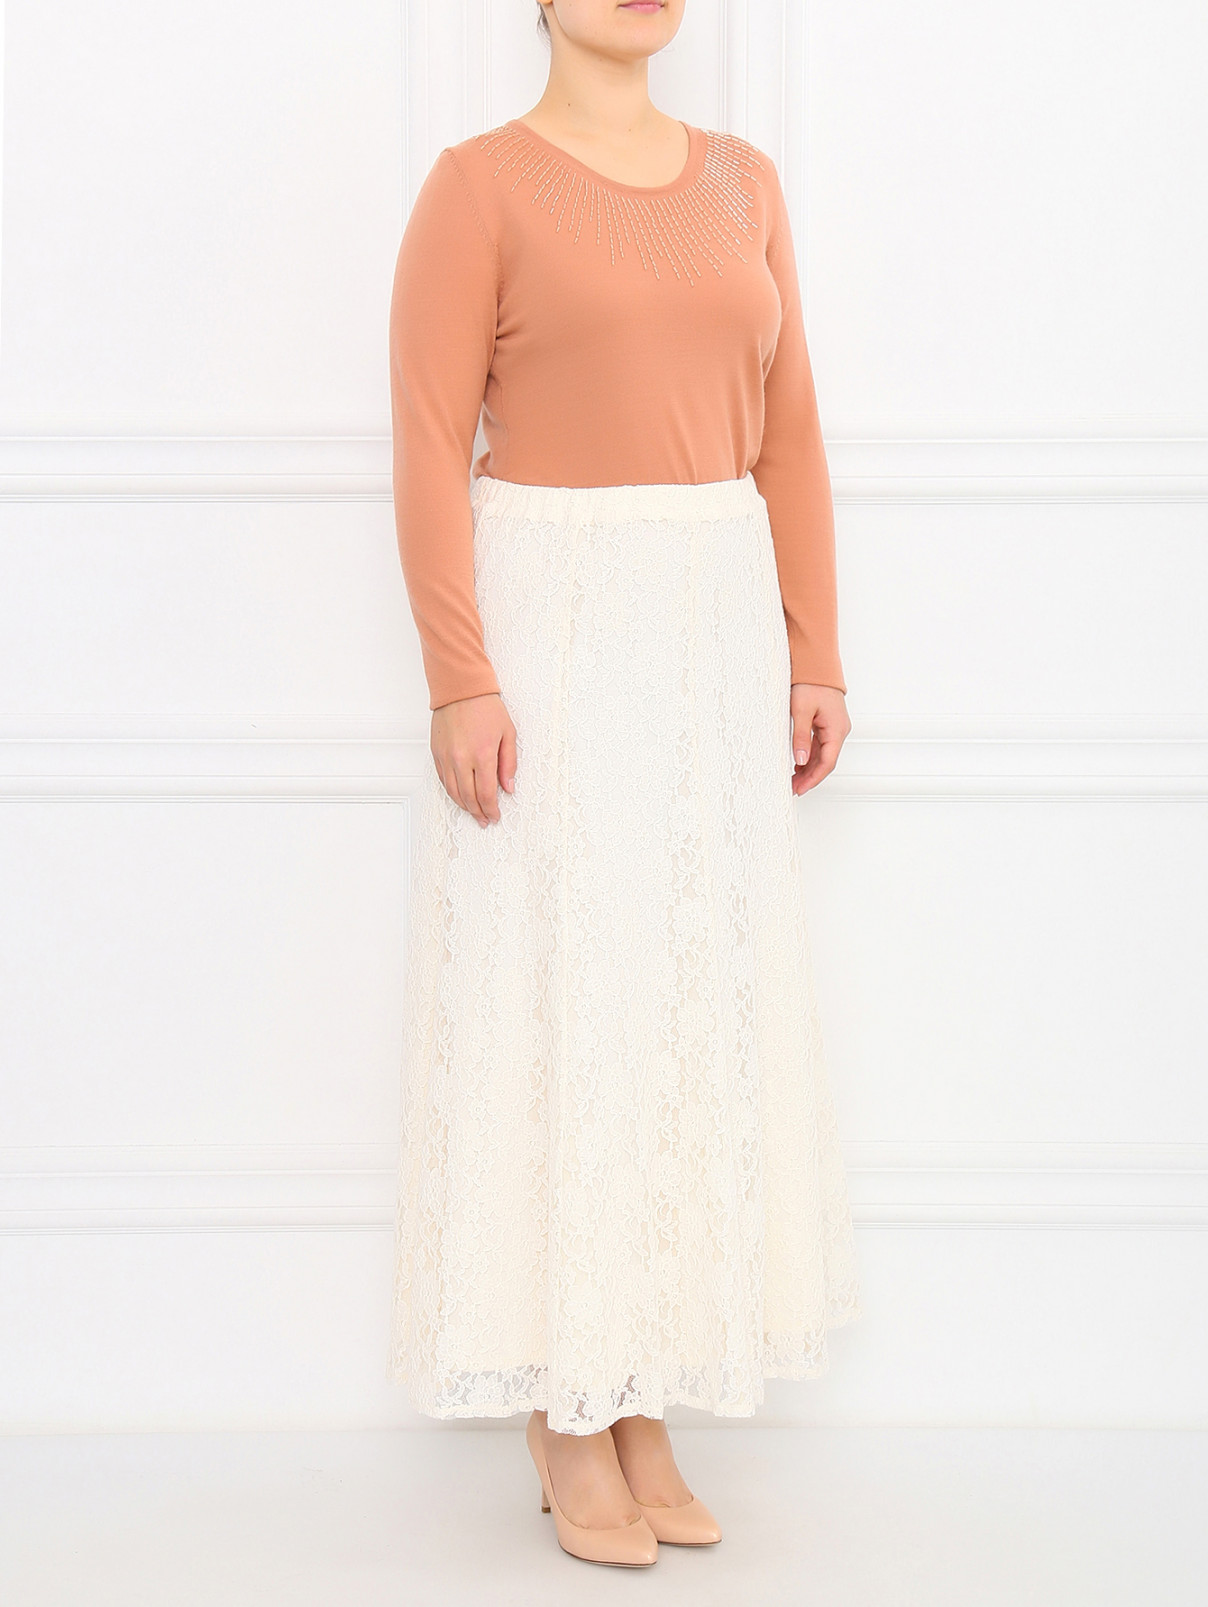 Кружевная юбка-миди из хлопка Marina Sport  –  Модель Общий вид  – Цвет:  Белый